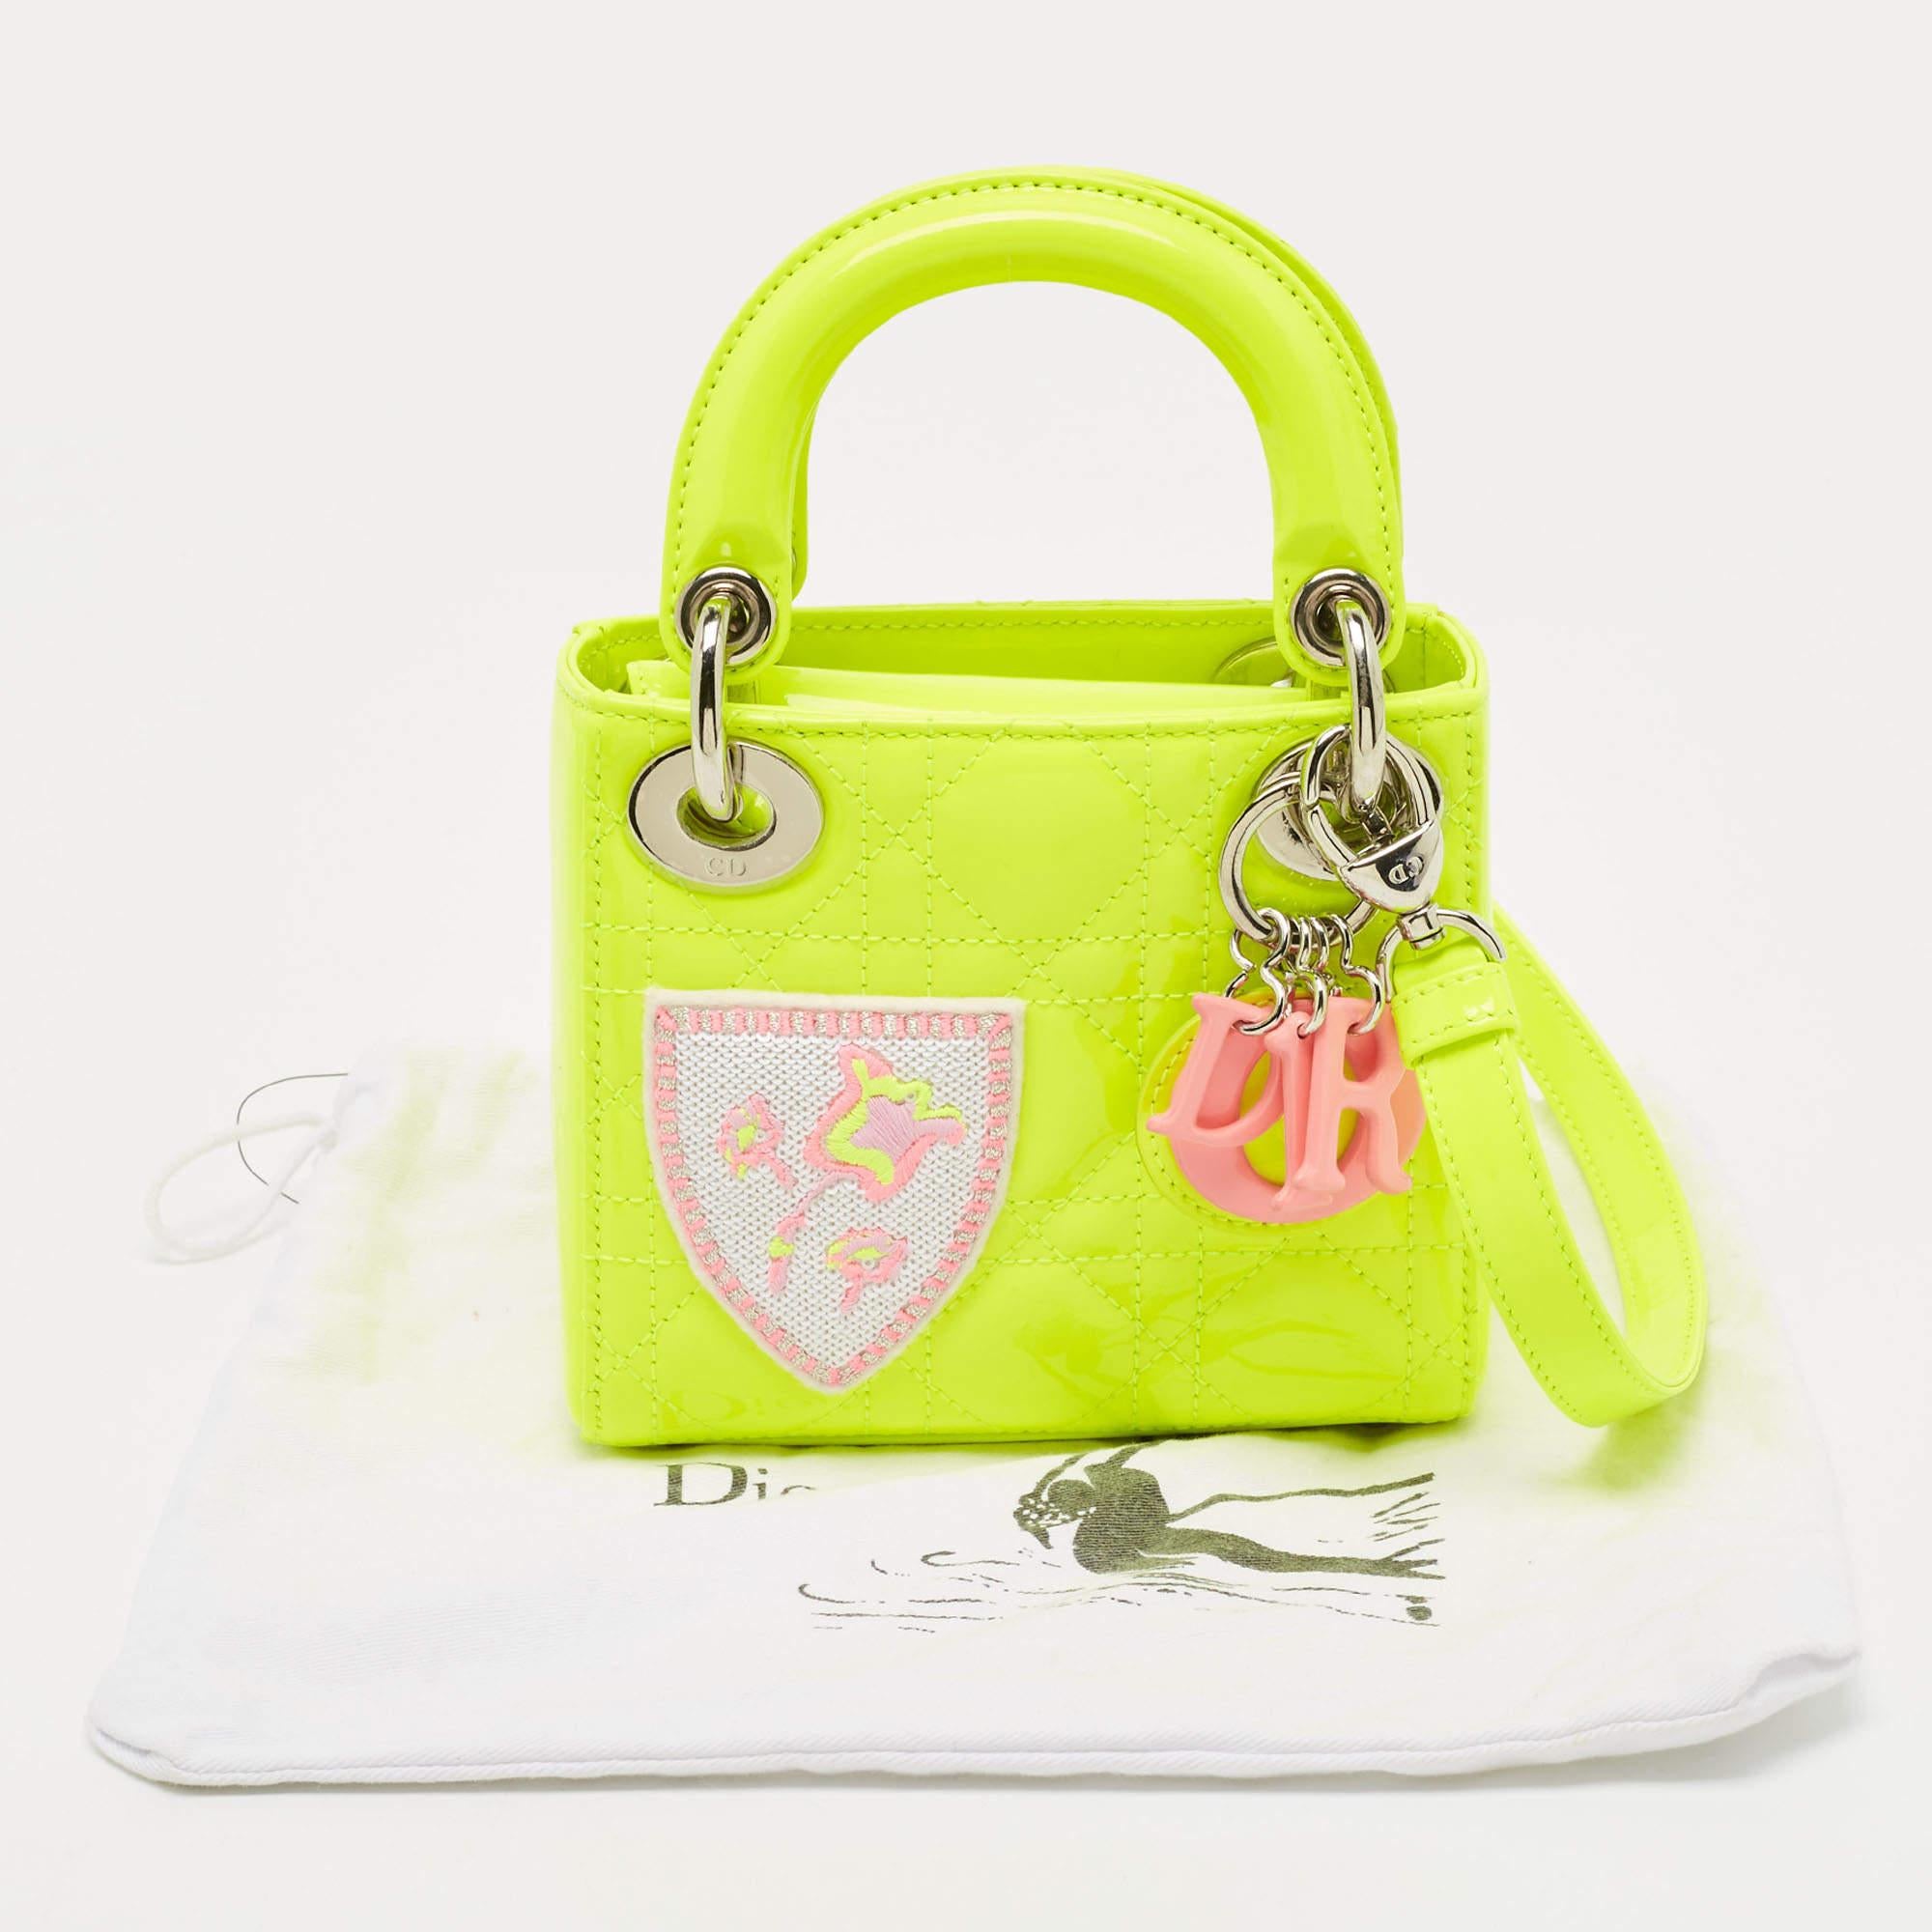 Dior Neongrüne Mini Lady Dior Tote Bag aus Lackleder mit bestickten Patches (Gelb)